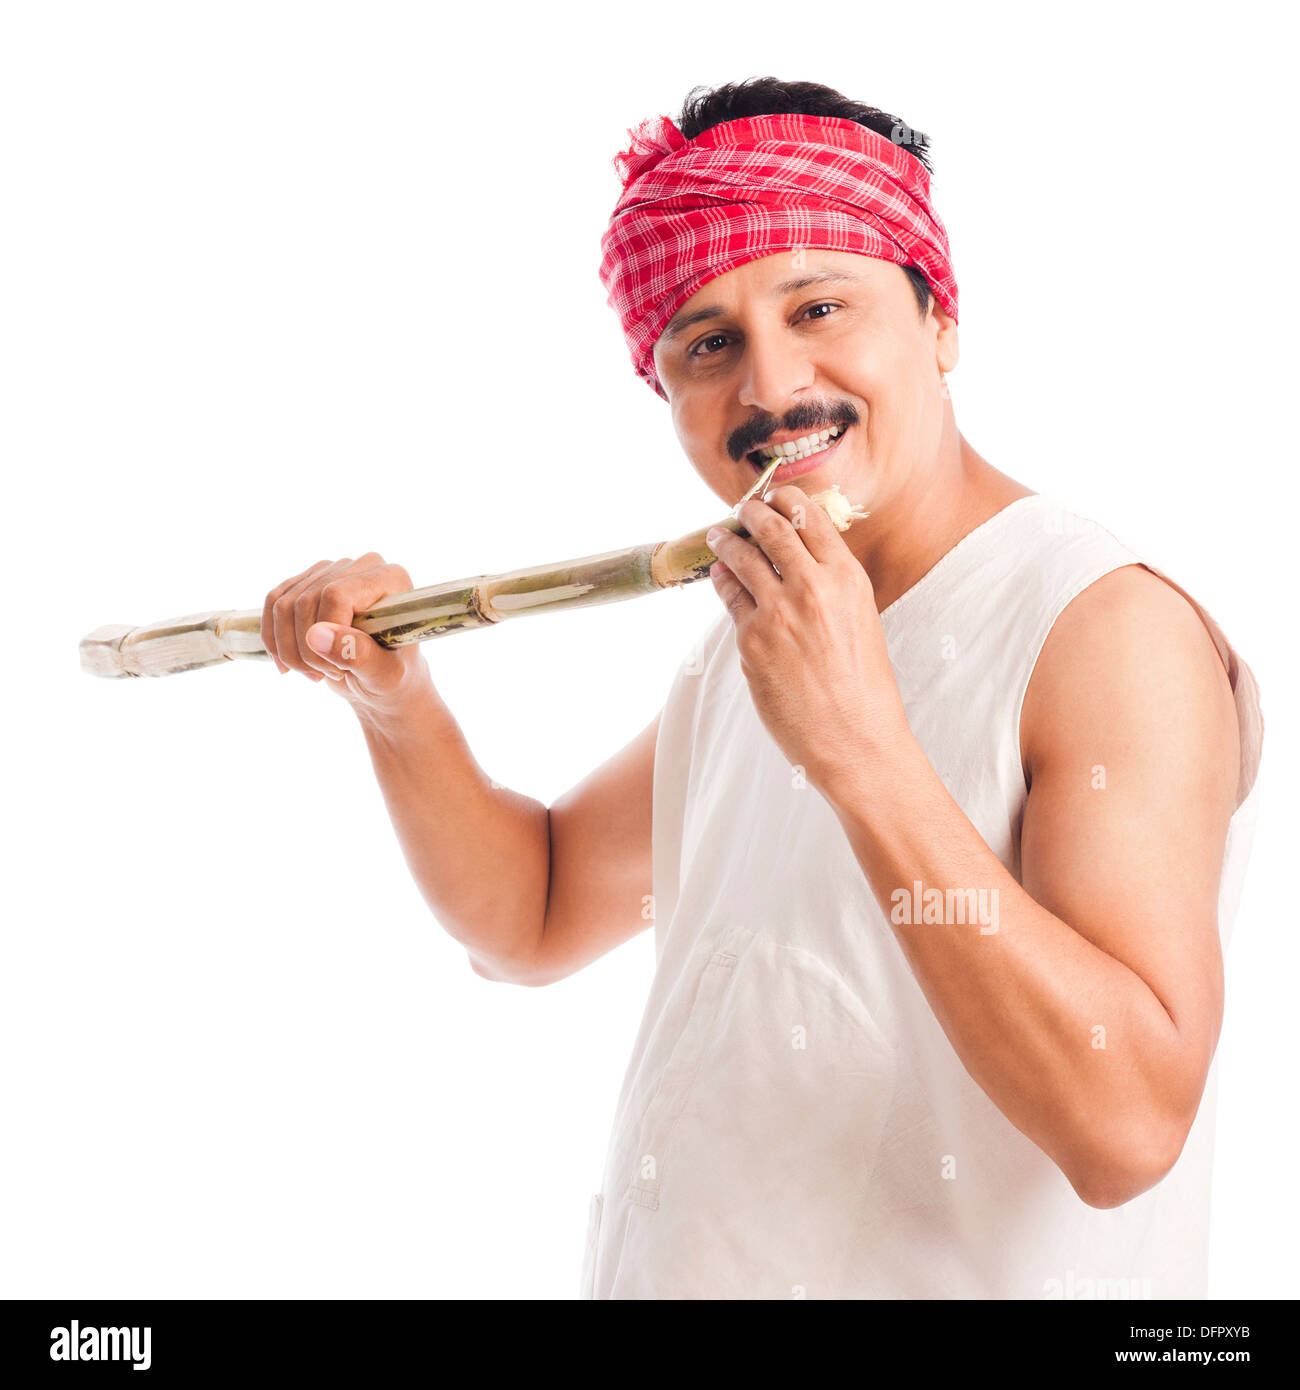 Ritratto di un agricoltore di mangiare la canna da zucchero e sorridente Foto Stock